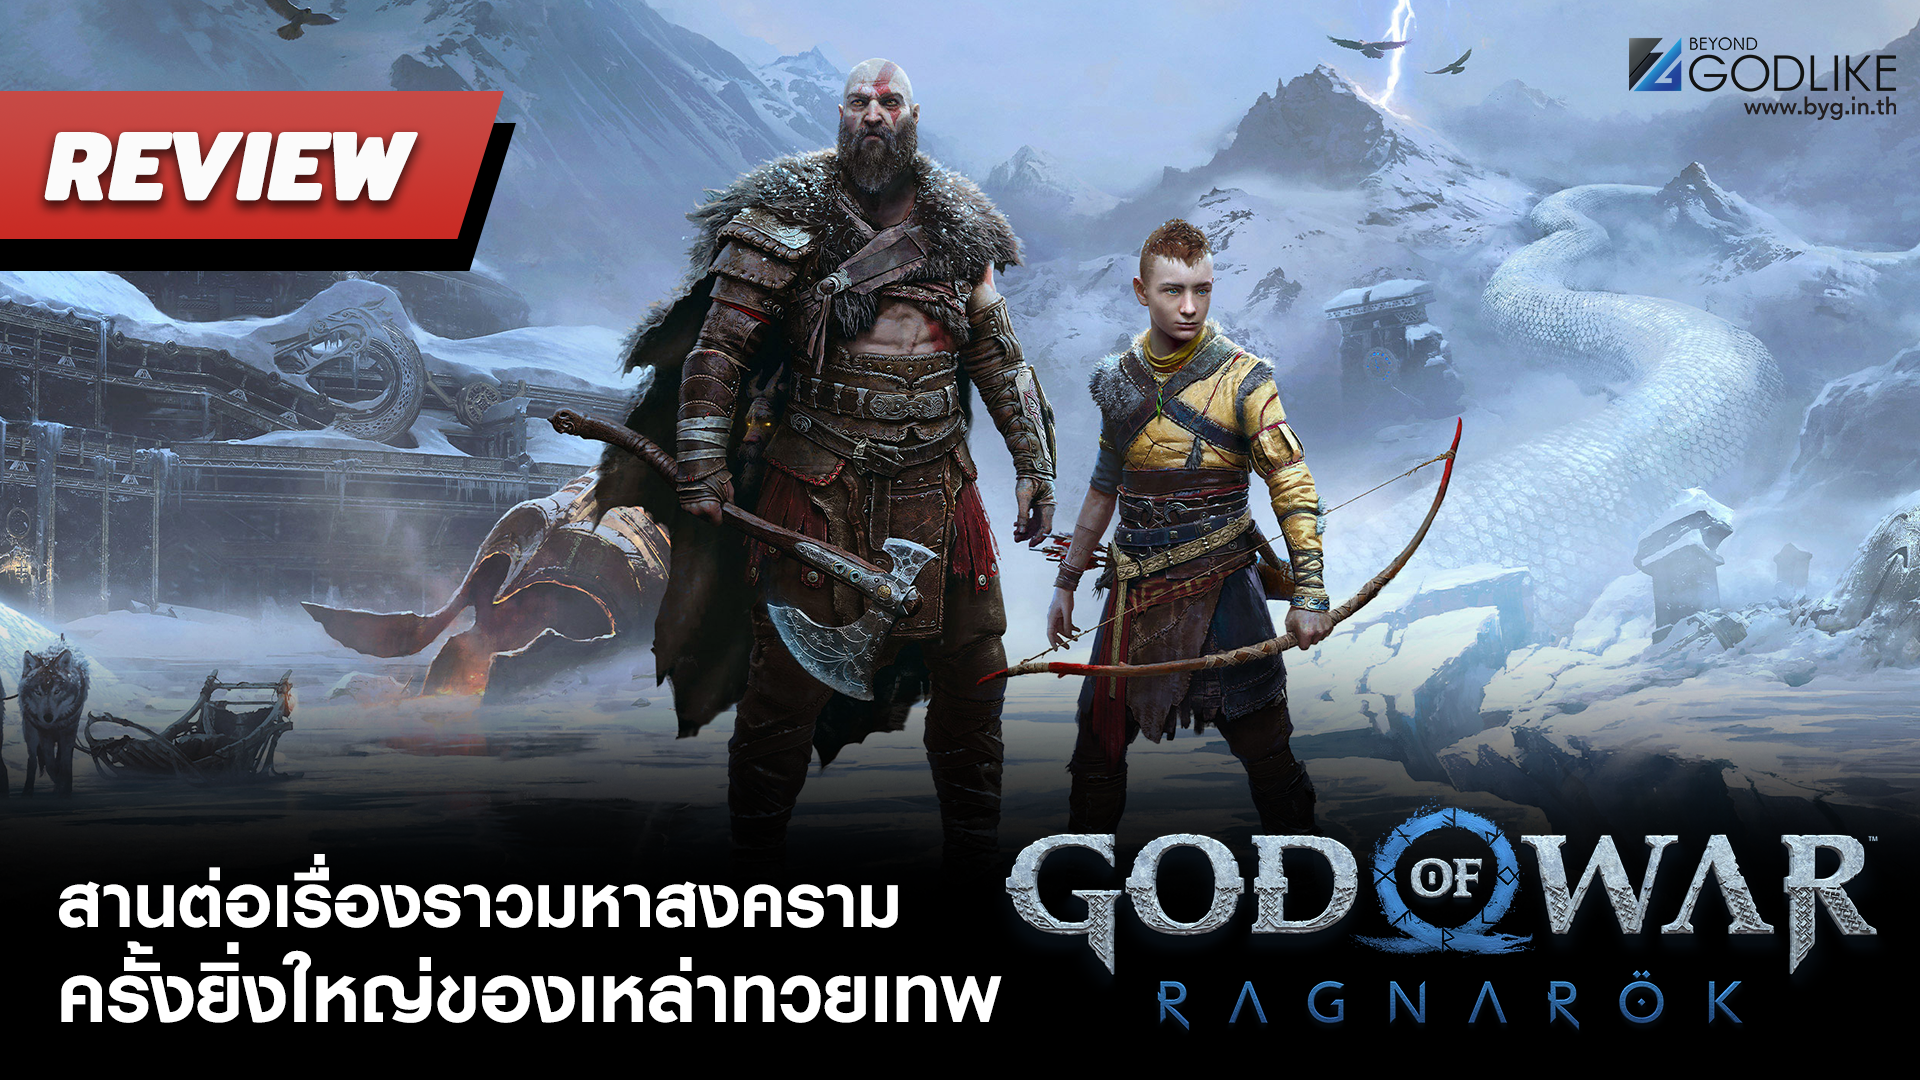 [Review] God of War: Ragnarok สานต่อเรื่องราวมหาสงครามครั้งยิ่งใหญ่ของเหล่าทวยเทพ